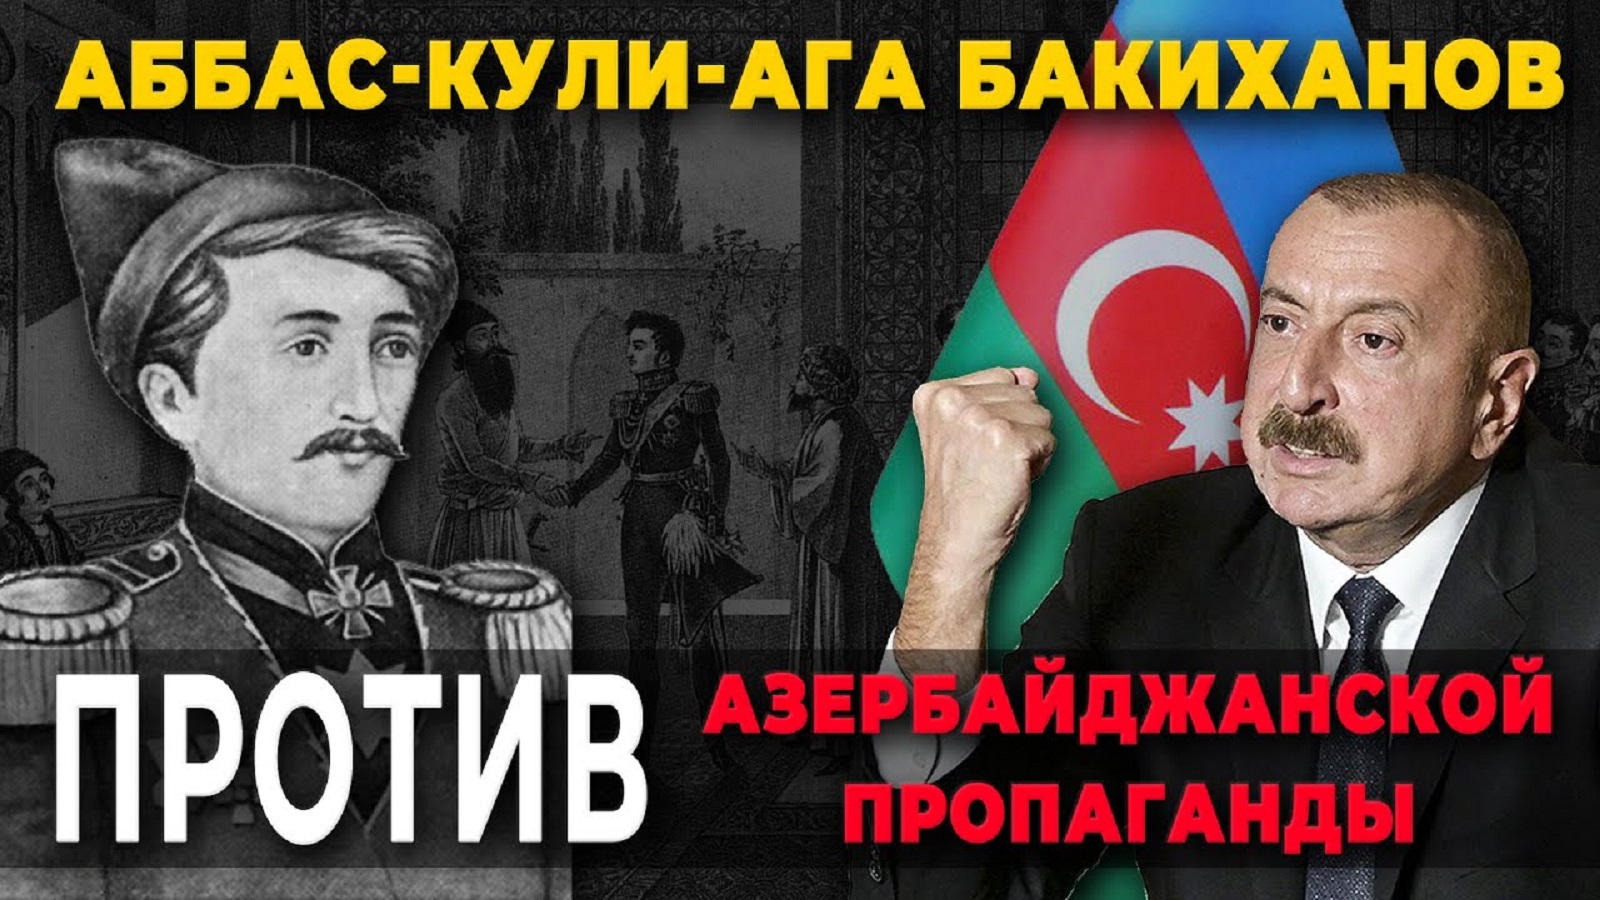 Бакиханов против азербайджанской пропаганды/HAYK media